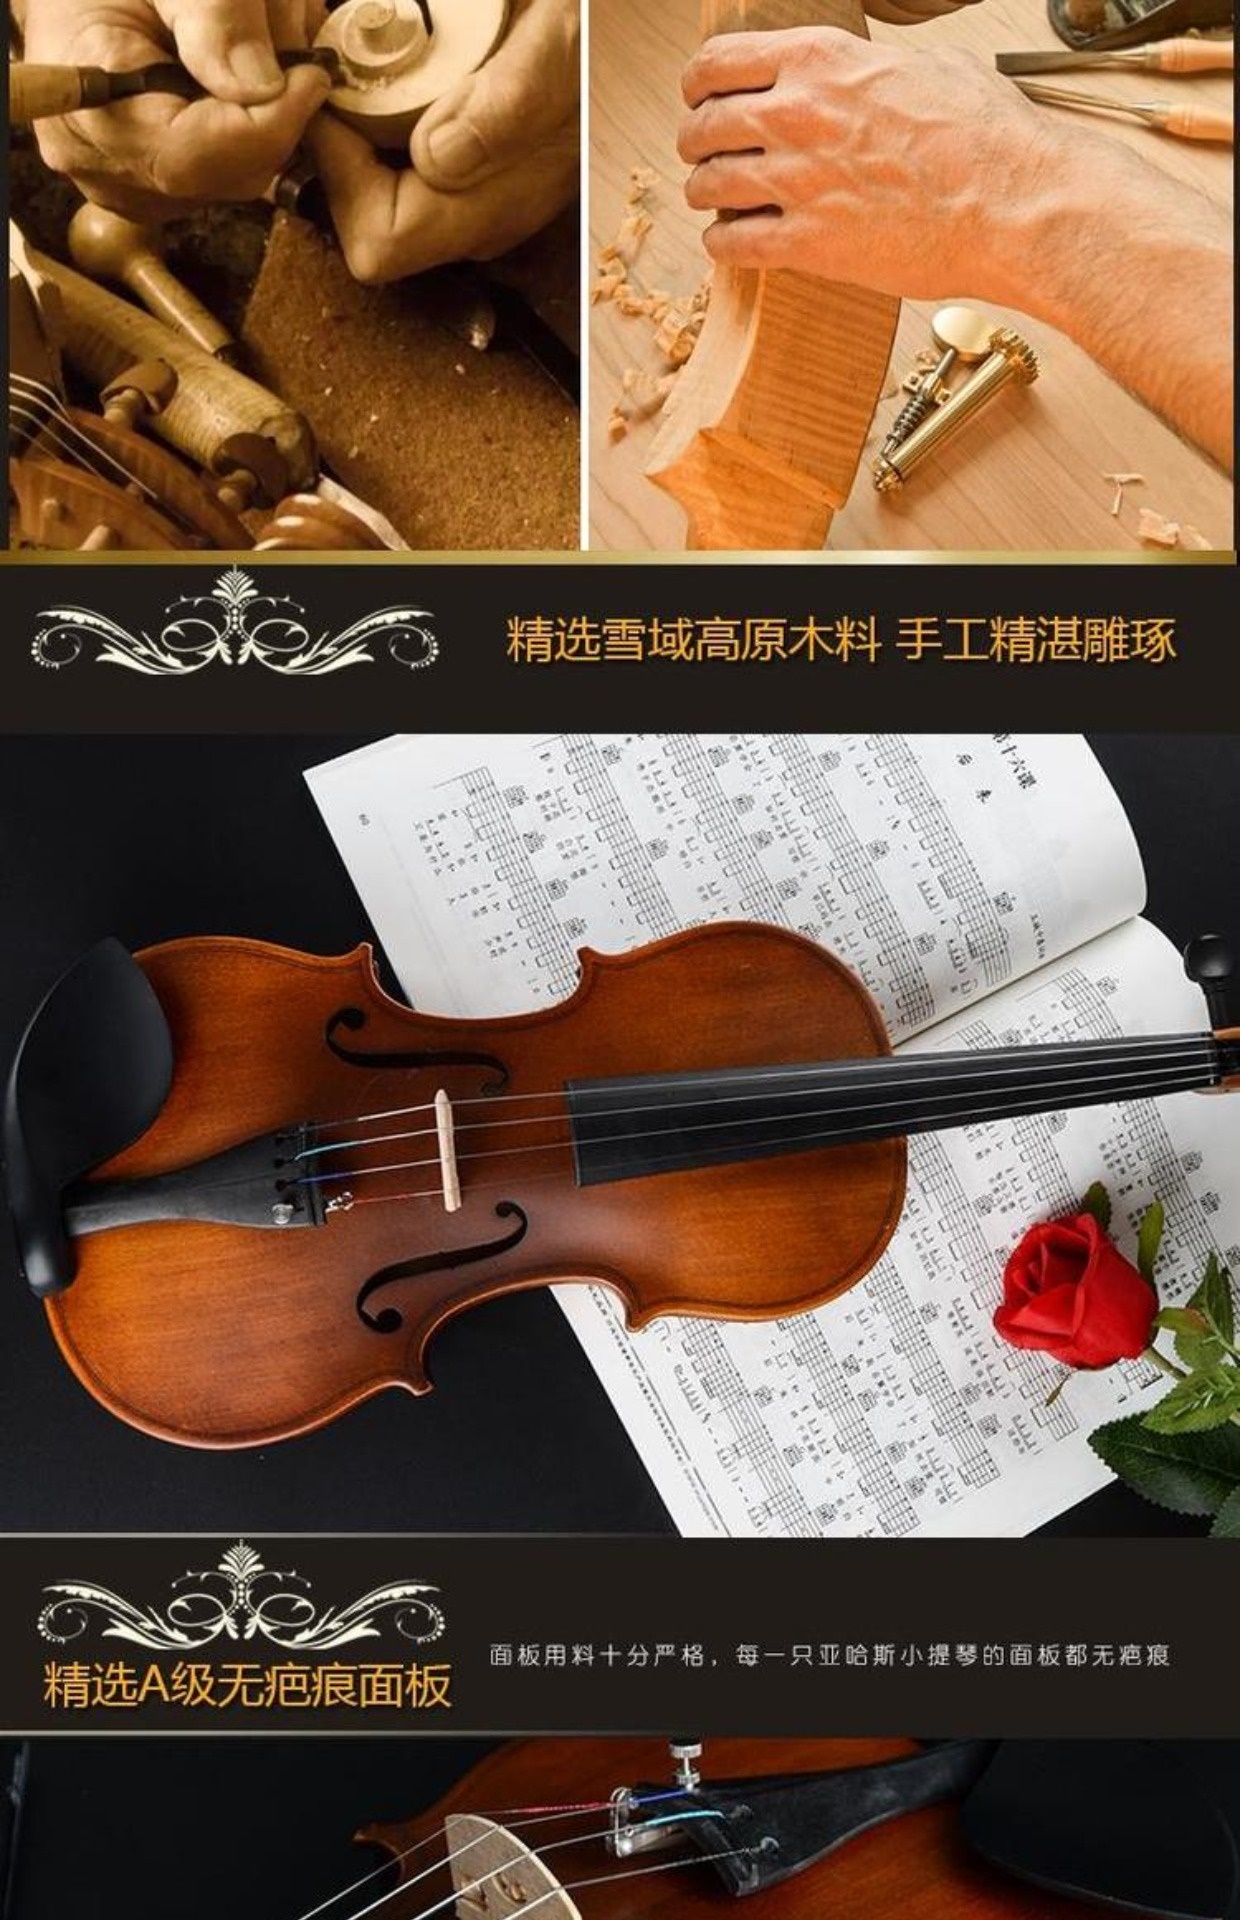 Cao cấp chuyên nghiệp chơi violin người lớn mới bắt đầu nhạc cụ trẻ em luyện thi đầu vào gỗ rắn thủ công nhỏ - Nhạc cụ phương Tây